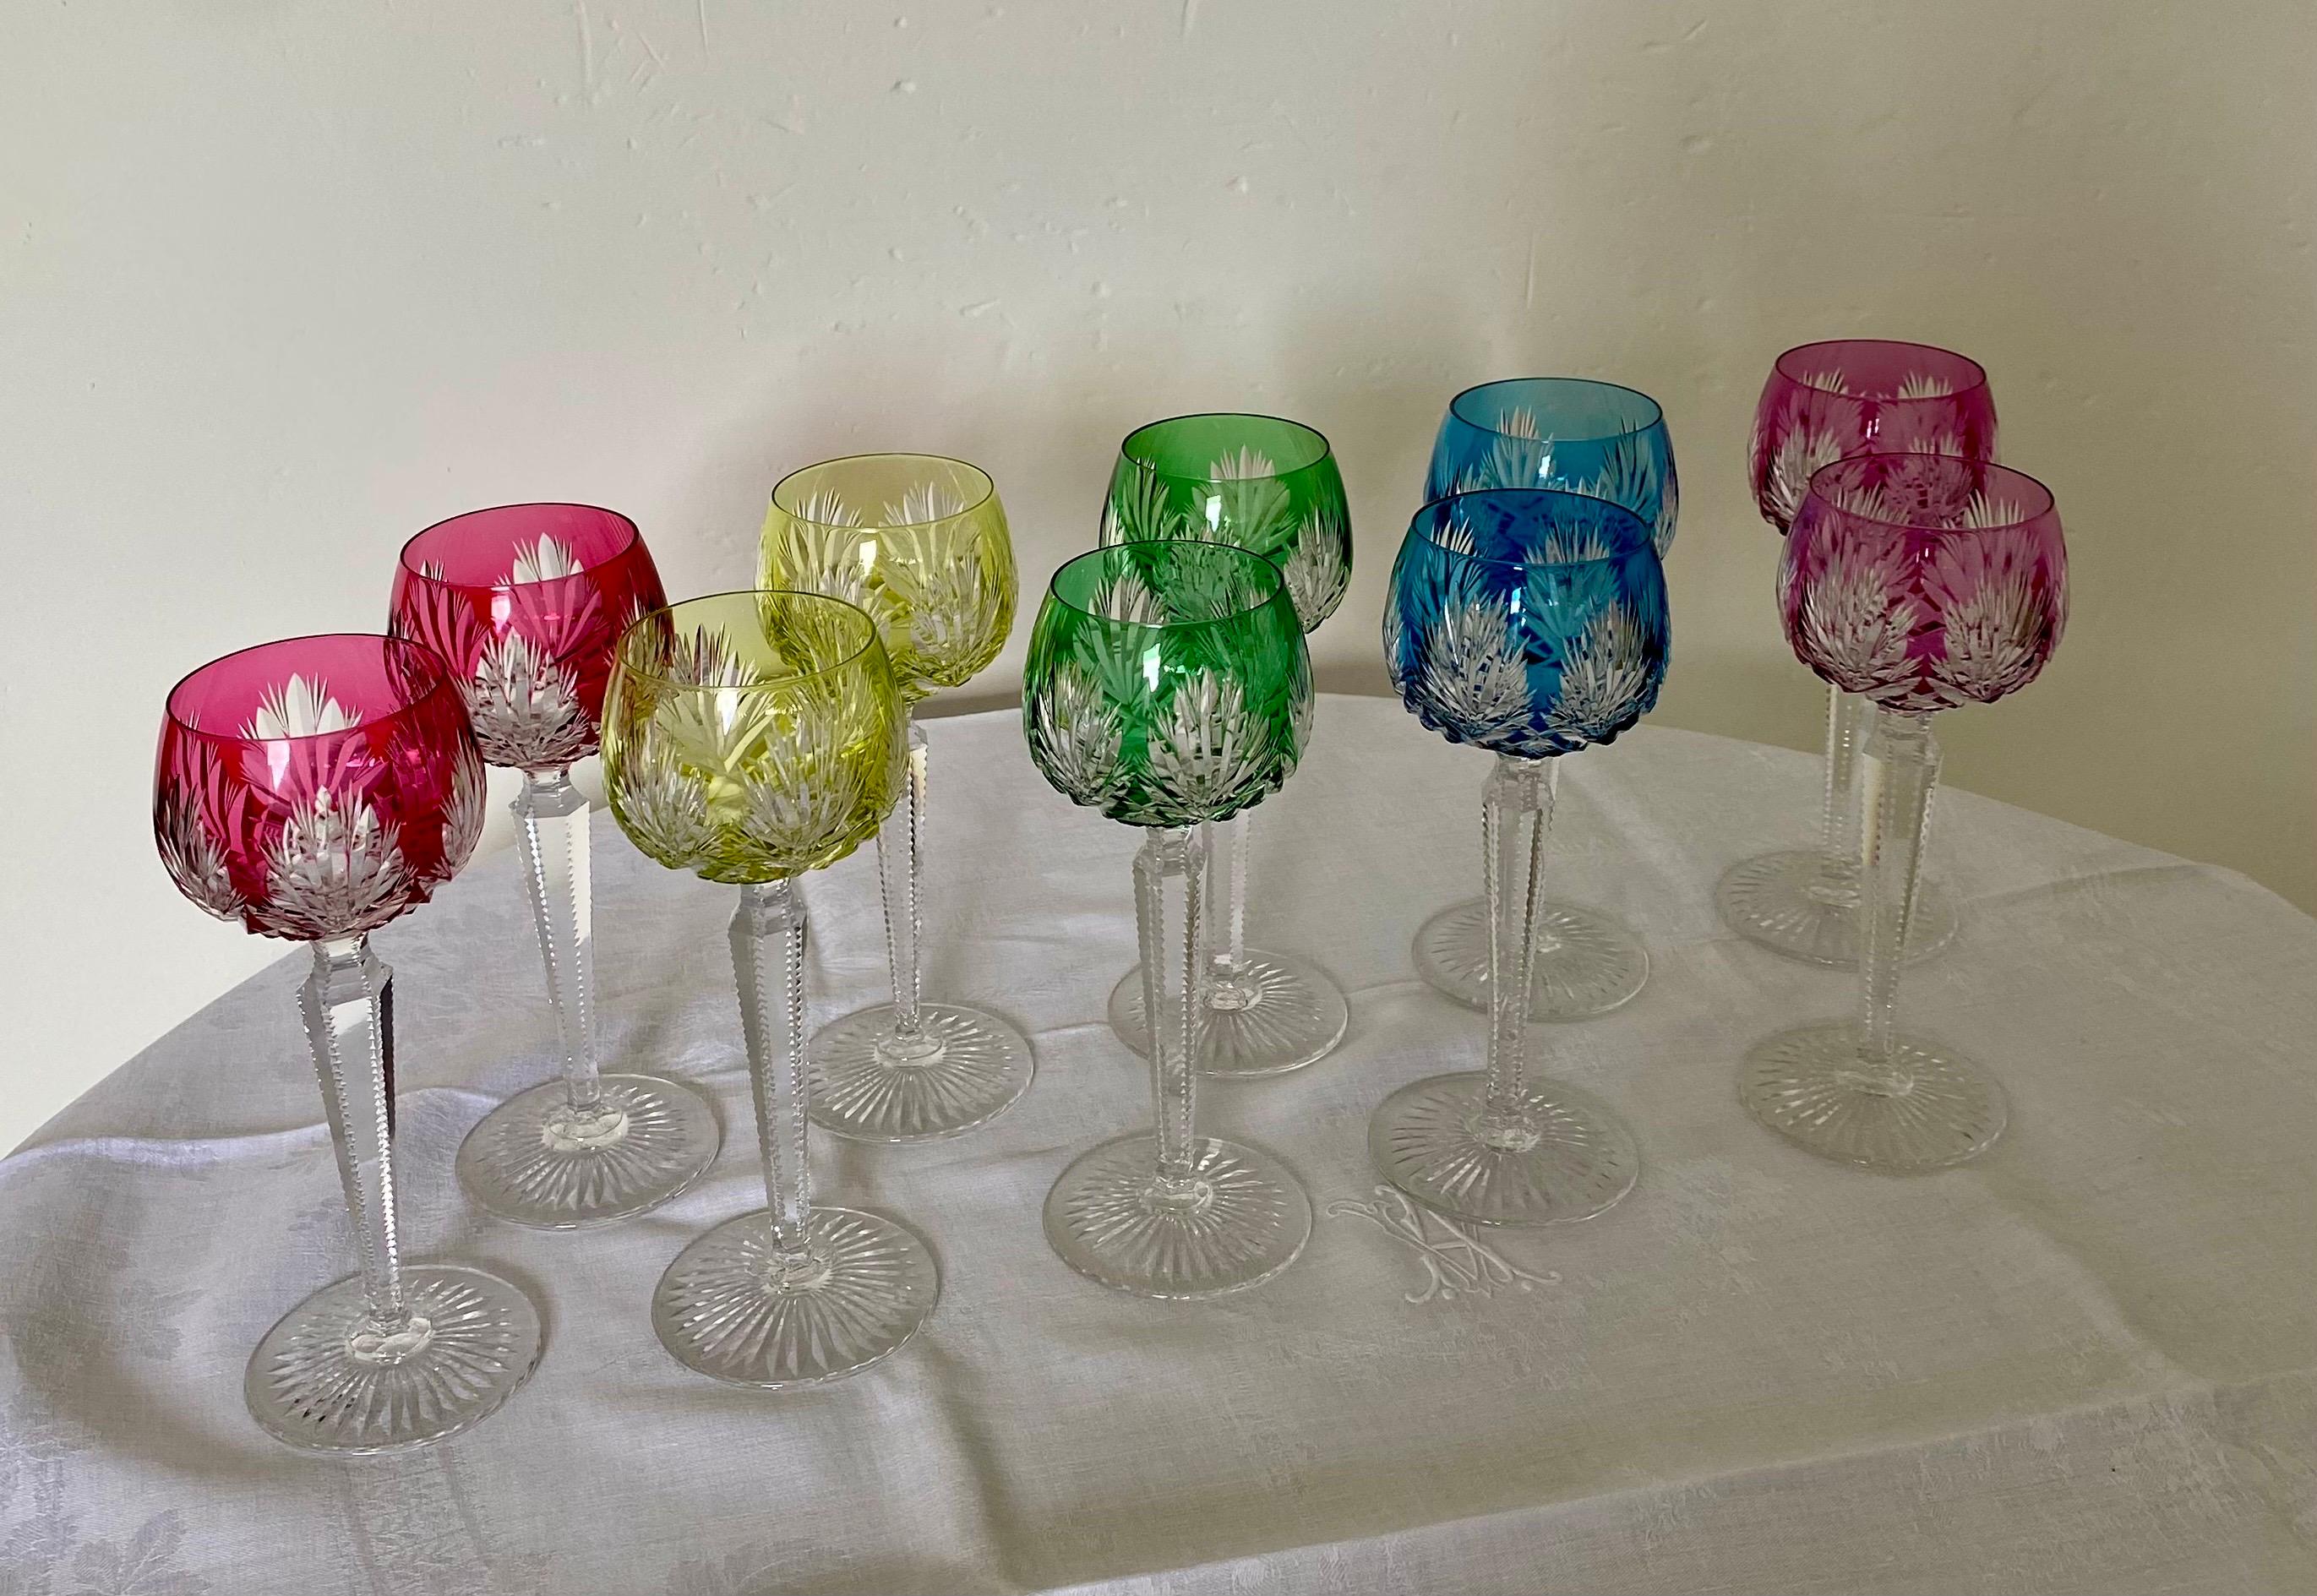 Série de dix verres à vin en cristal de maison française Saint-Louis. Ce modèle a été créé au milieu du XXème siècle. 
Ces verres en cristal taillé ont des jambages finement ciselé. 
Nous proposons ici cinq couleurs lumineuses. 
Tous les verres sont